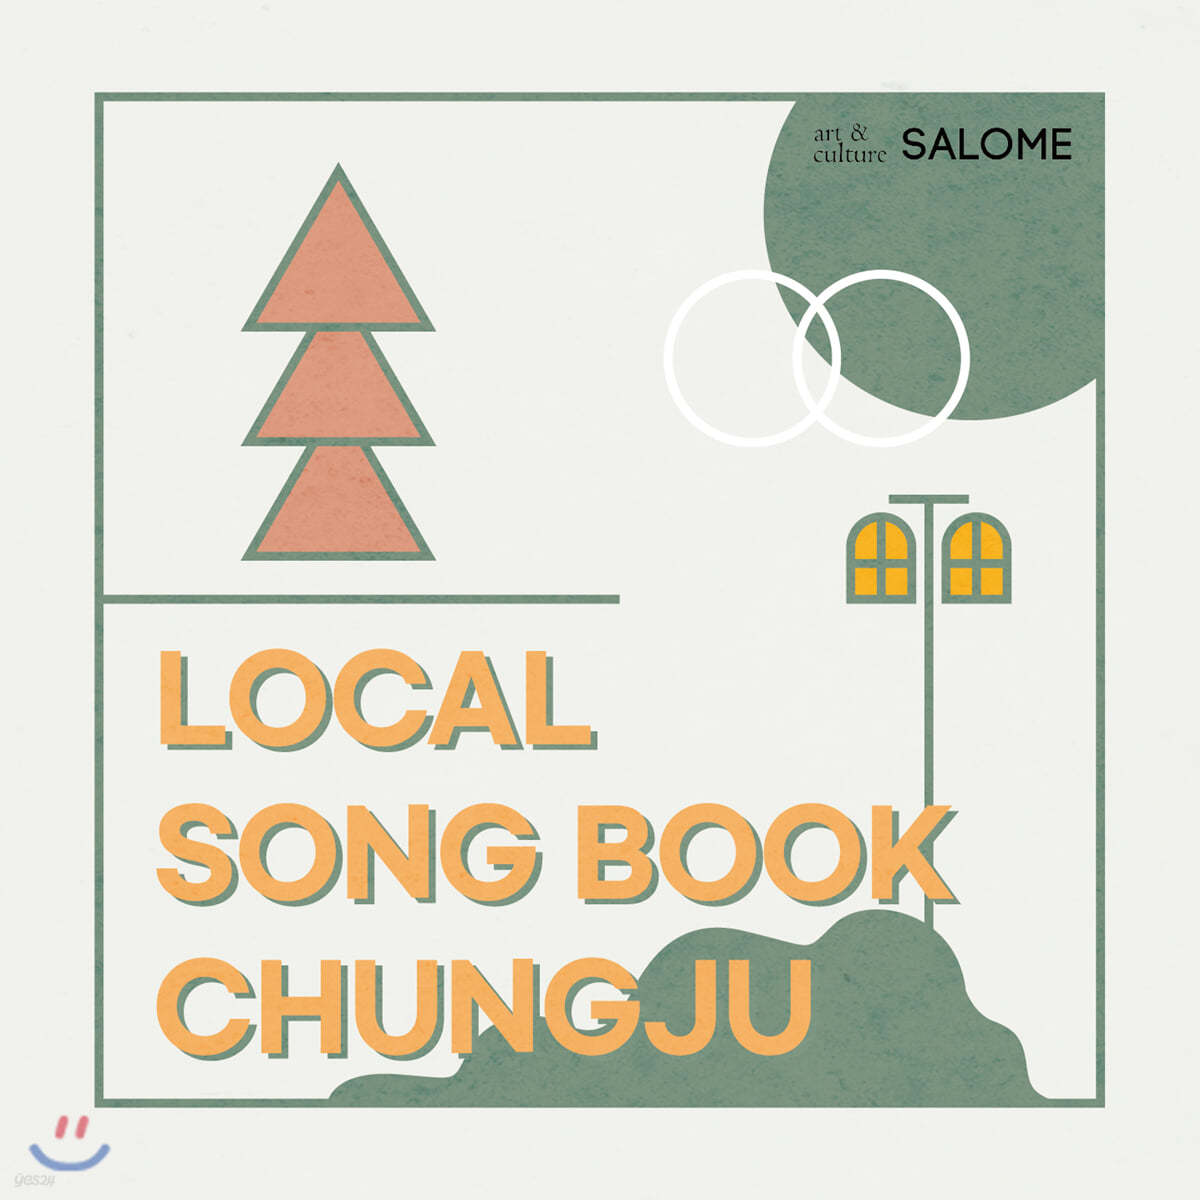 살로메 (SALOME) - 시집: 로컬 송북 충주 (Local Song Book Chung Ju) 